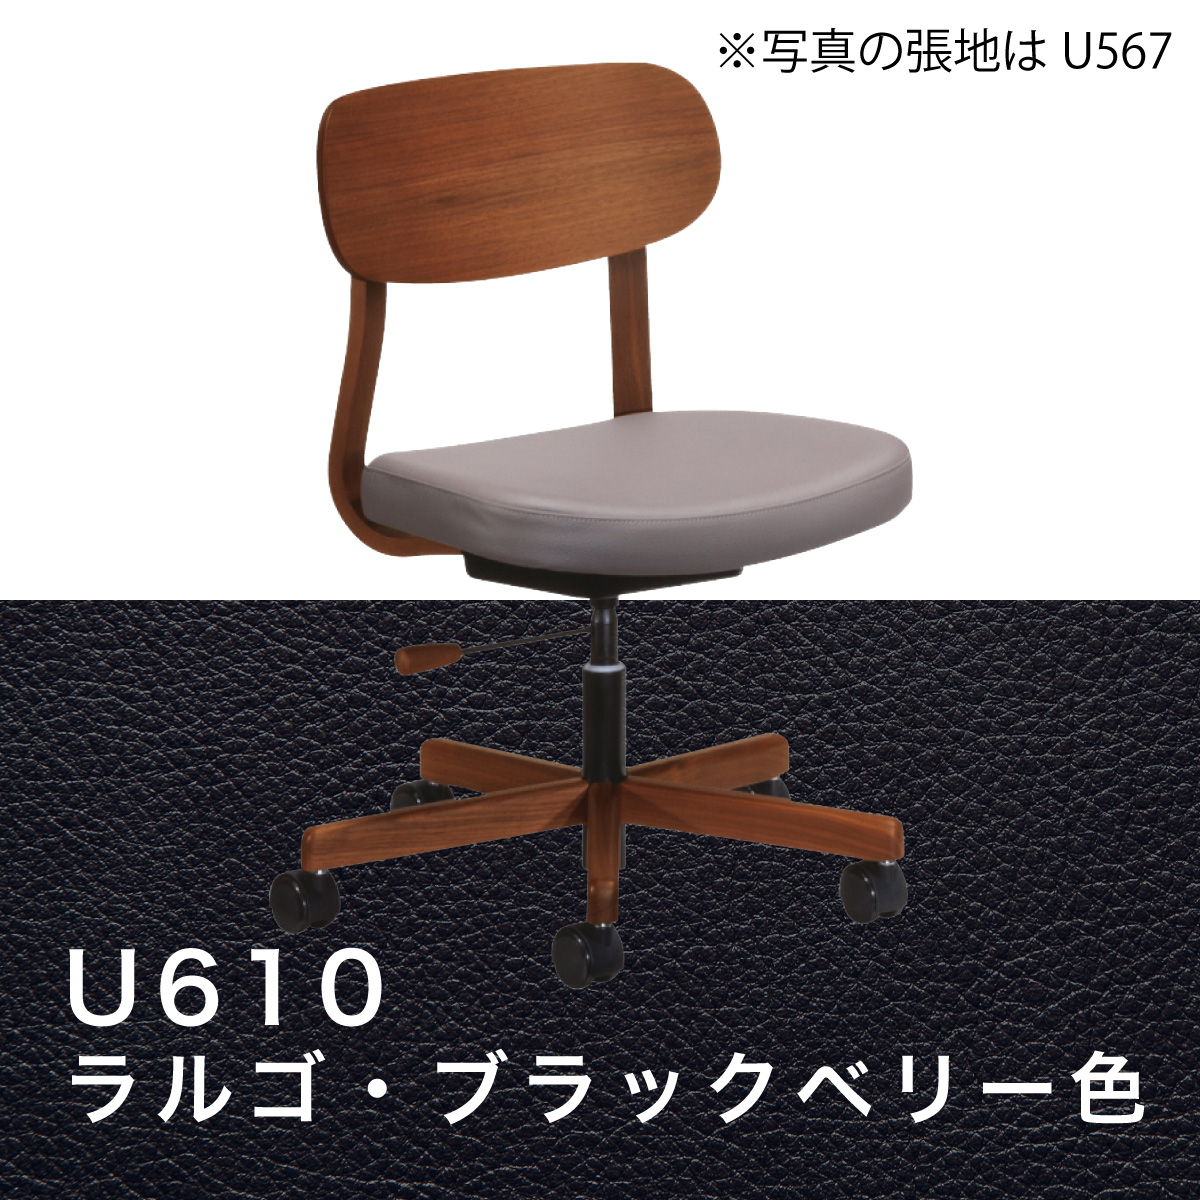 カリモク デスクチェア XW3301 オフィスチェア 木製 ウォールナット材 合成皮革張り ワークチェア 高さ調整 疲れない 姿勢 回転椅子  キャスター 国産 karimoku